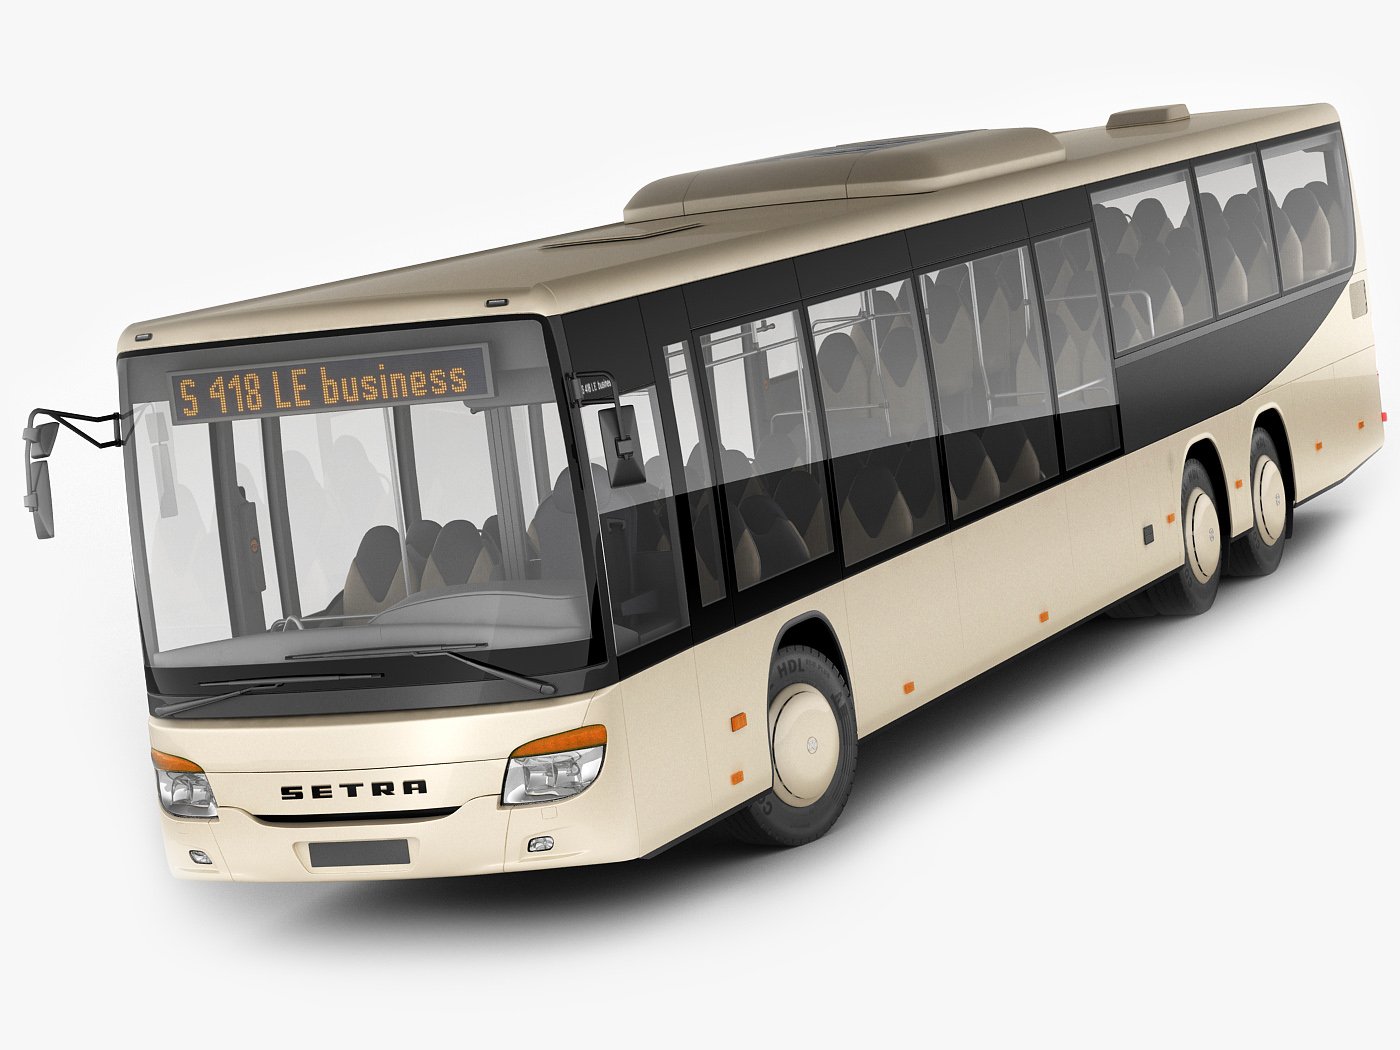 Setra S418le Business Bus 3d Model 3d Model In Bus 3dexport